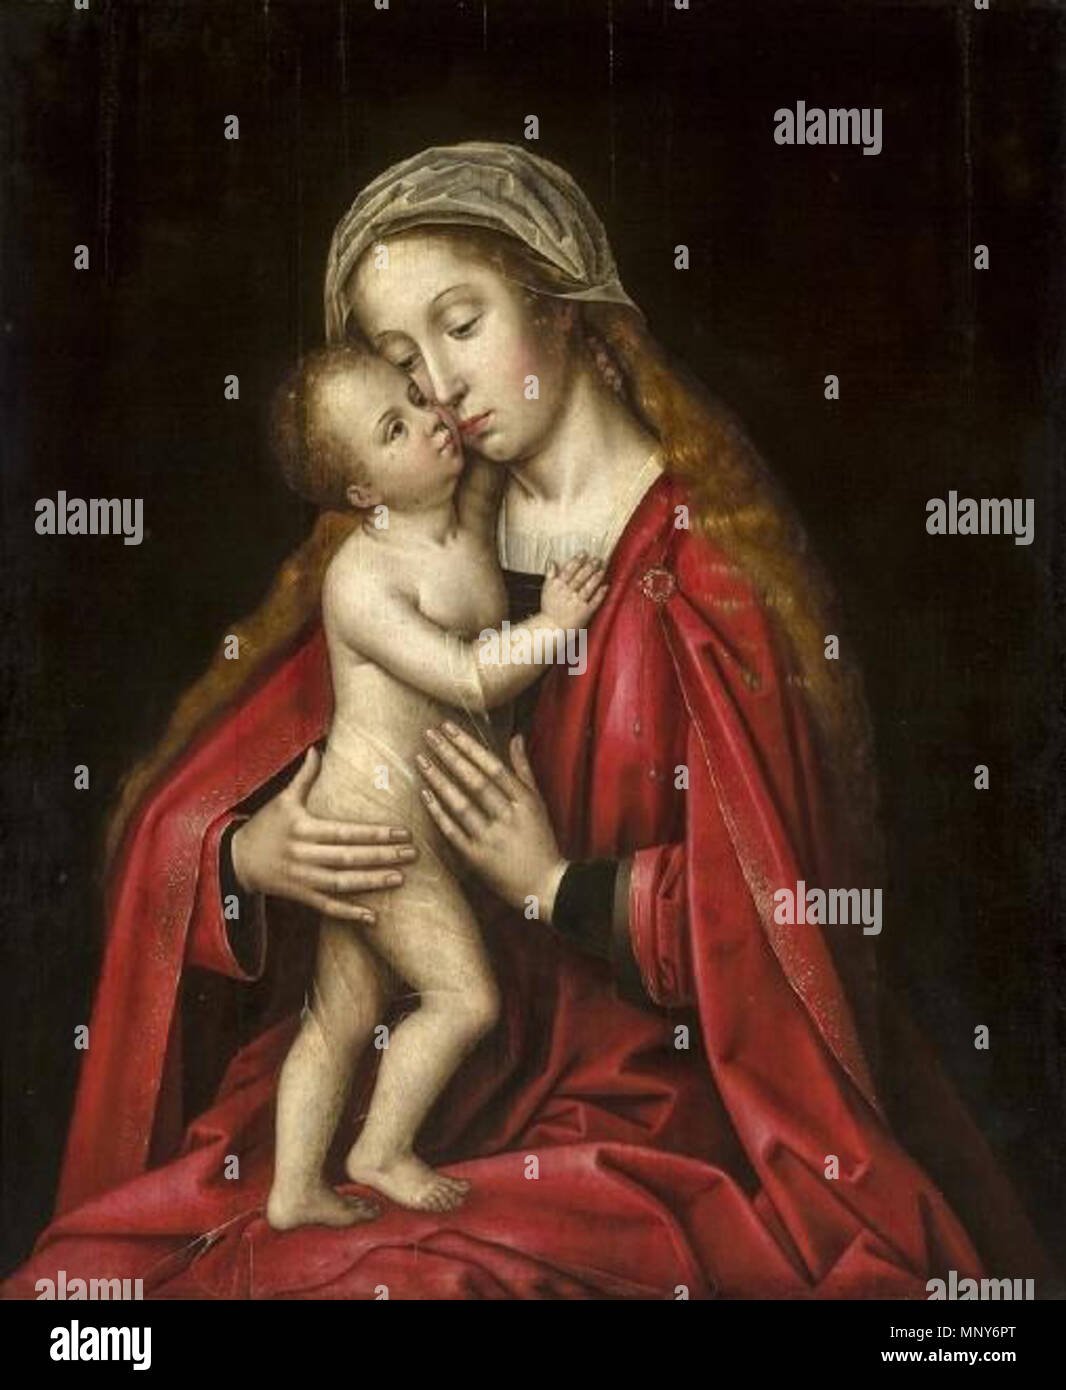 1239 Virgen con el Niño, atribuida a Ambrosius Benson (Museo de Bellas Artes de Sevilla) Stock Photo